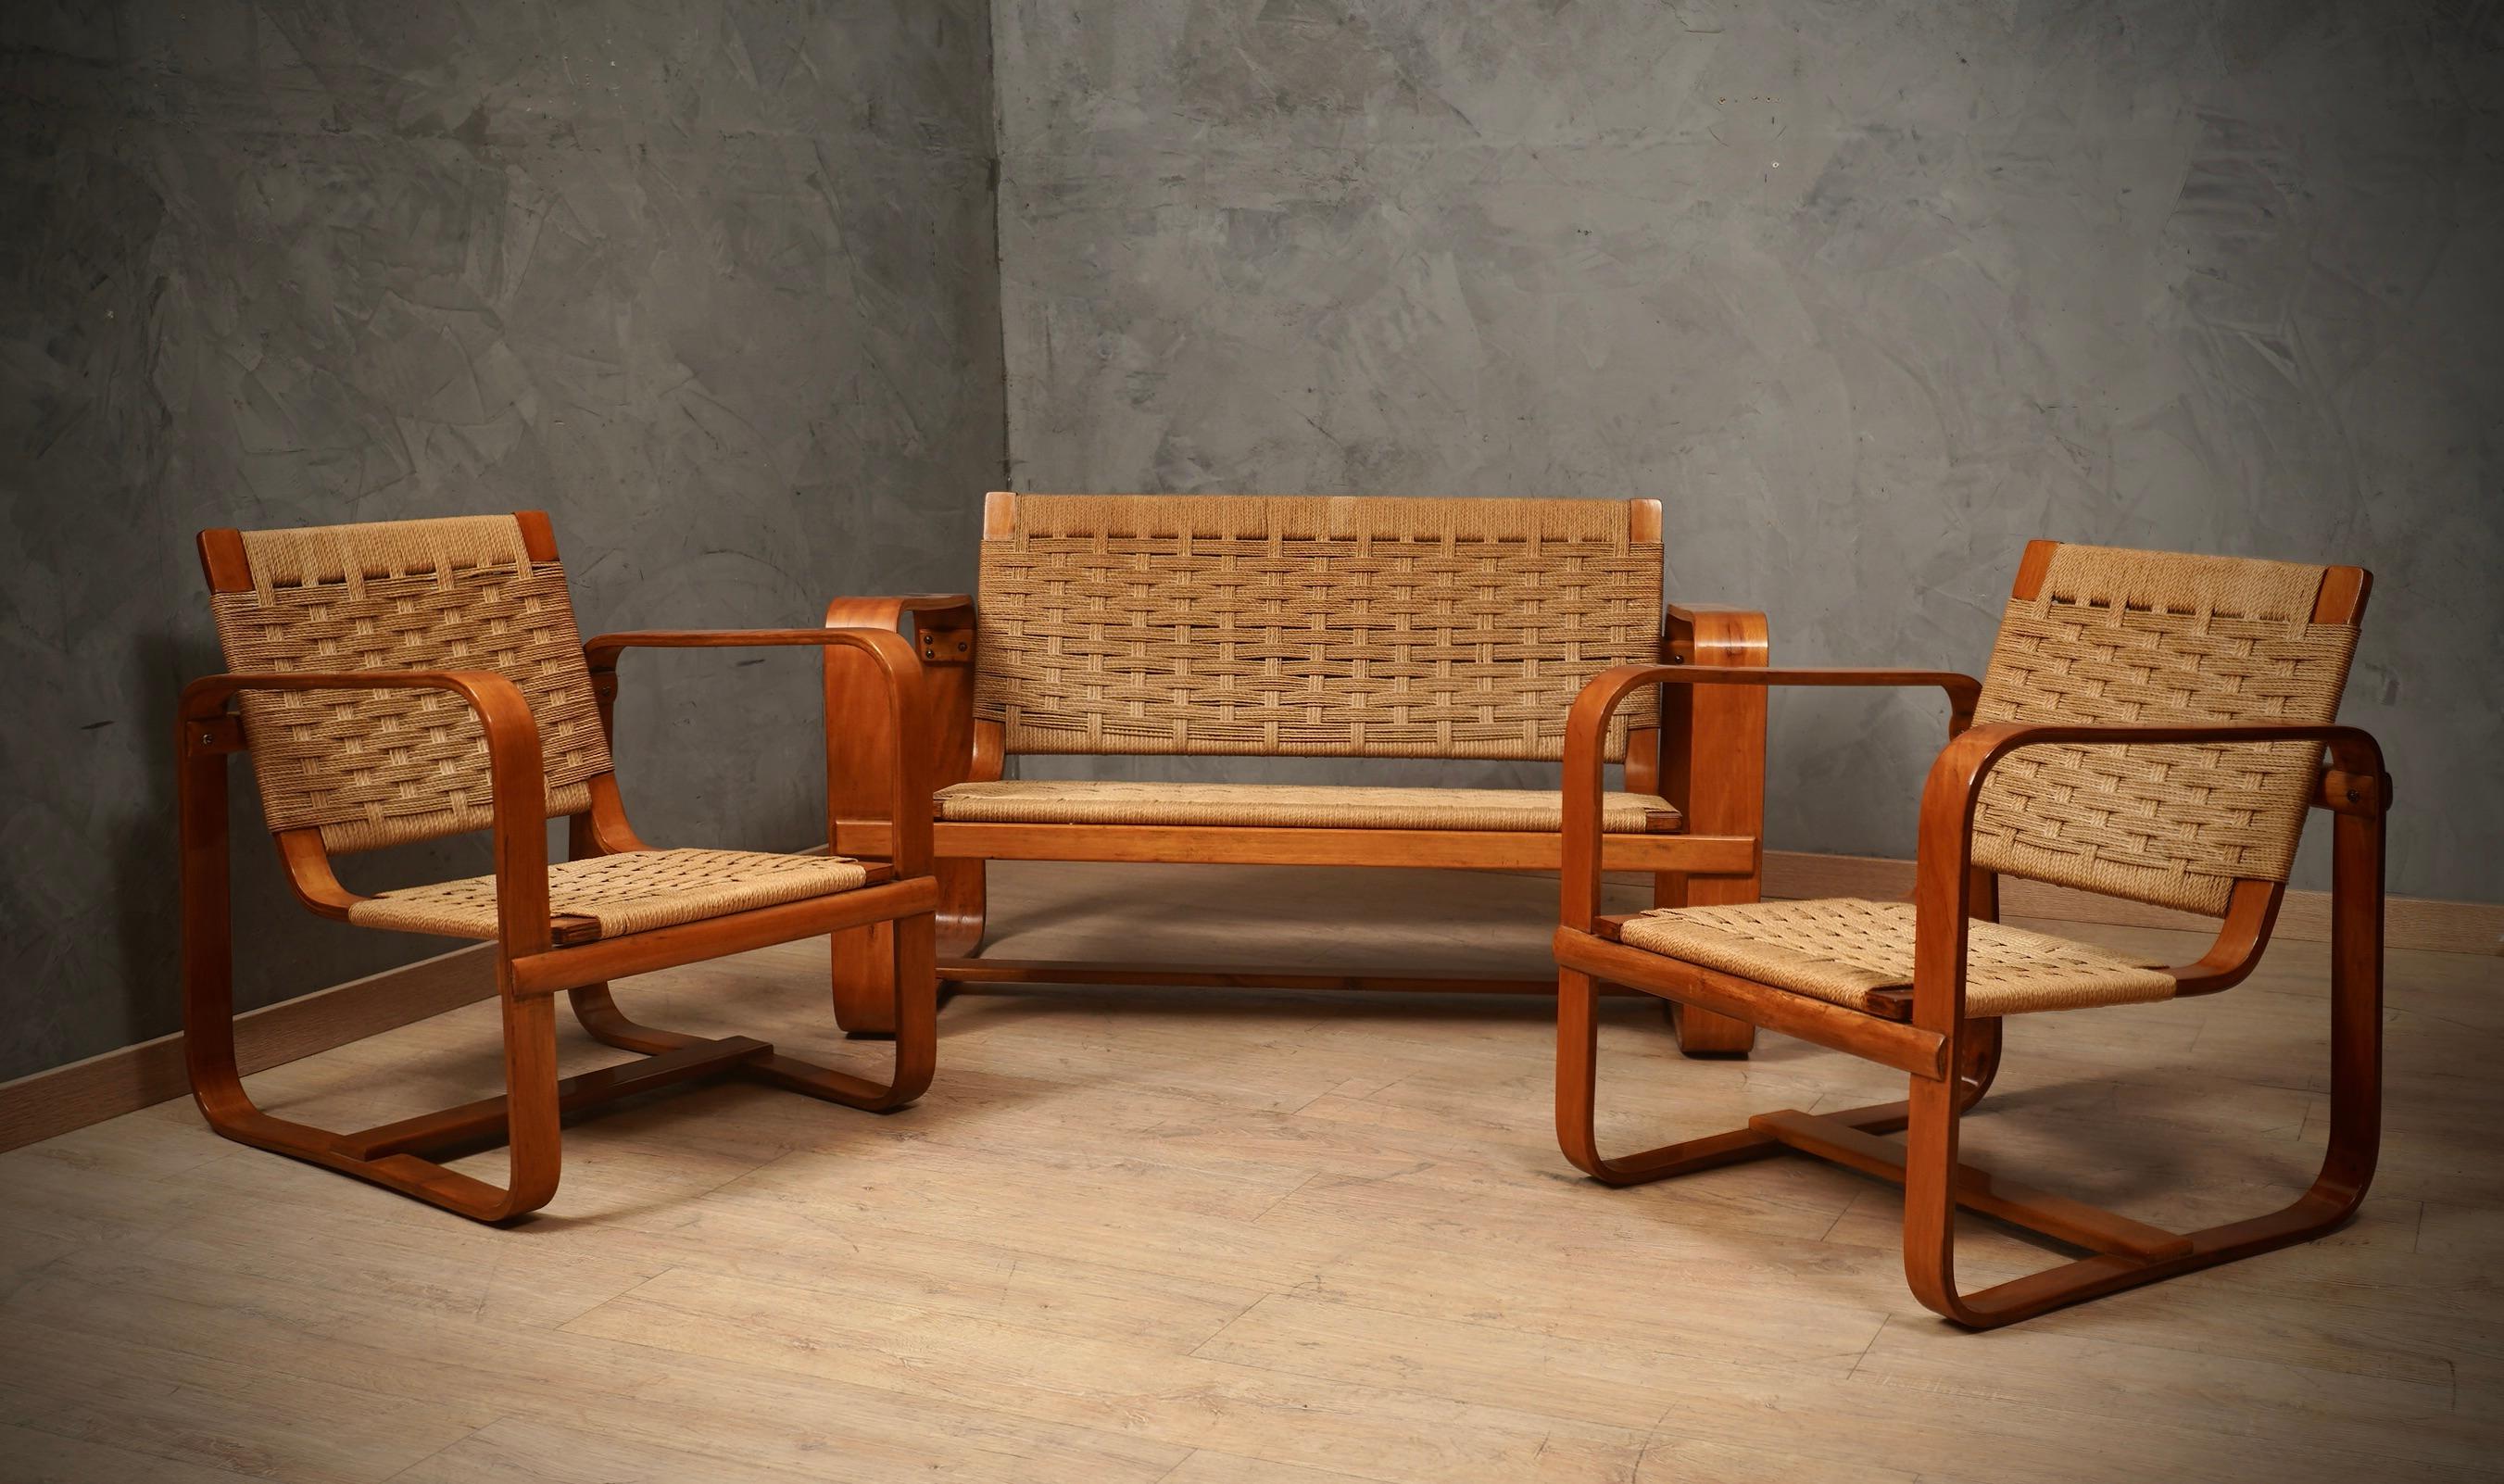 Ein sehr seltenes und unverzichtbares Sofa im Jahr 1940. 

Giuseppe Pagano Pogatschnig und Gino Maggioni haben dieses schöne Sofa aus geschwungenem Holz entworfen. Er besteht aus zwei großen Quadraten aus gebogenem Holz (typische Verarbeitung dieser